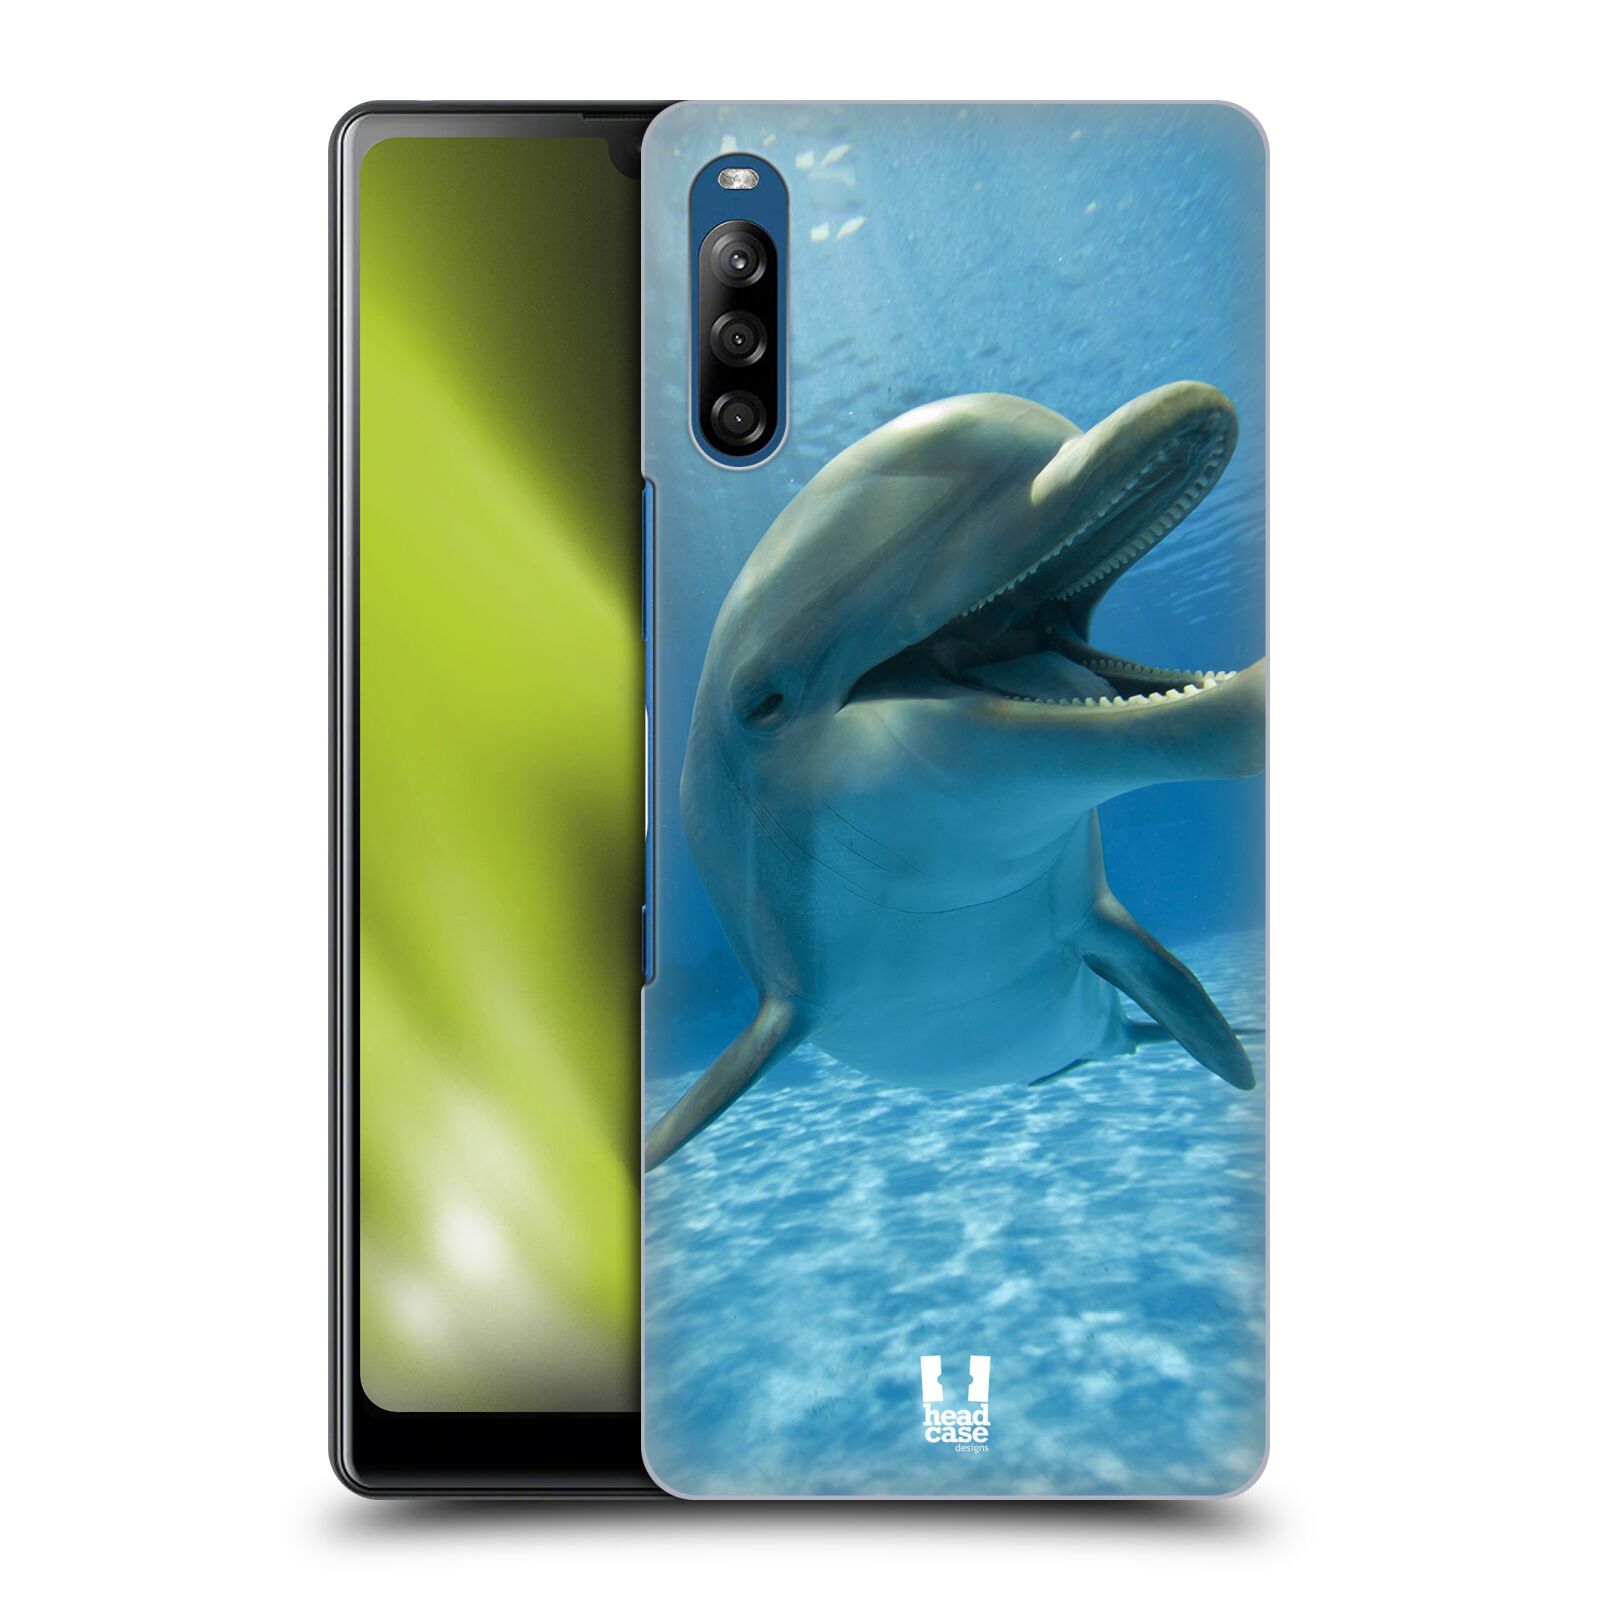 Zadní obal pro mobil Sony Xperia L4 - HEAD CASE - Svět zvířat delfín v moři